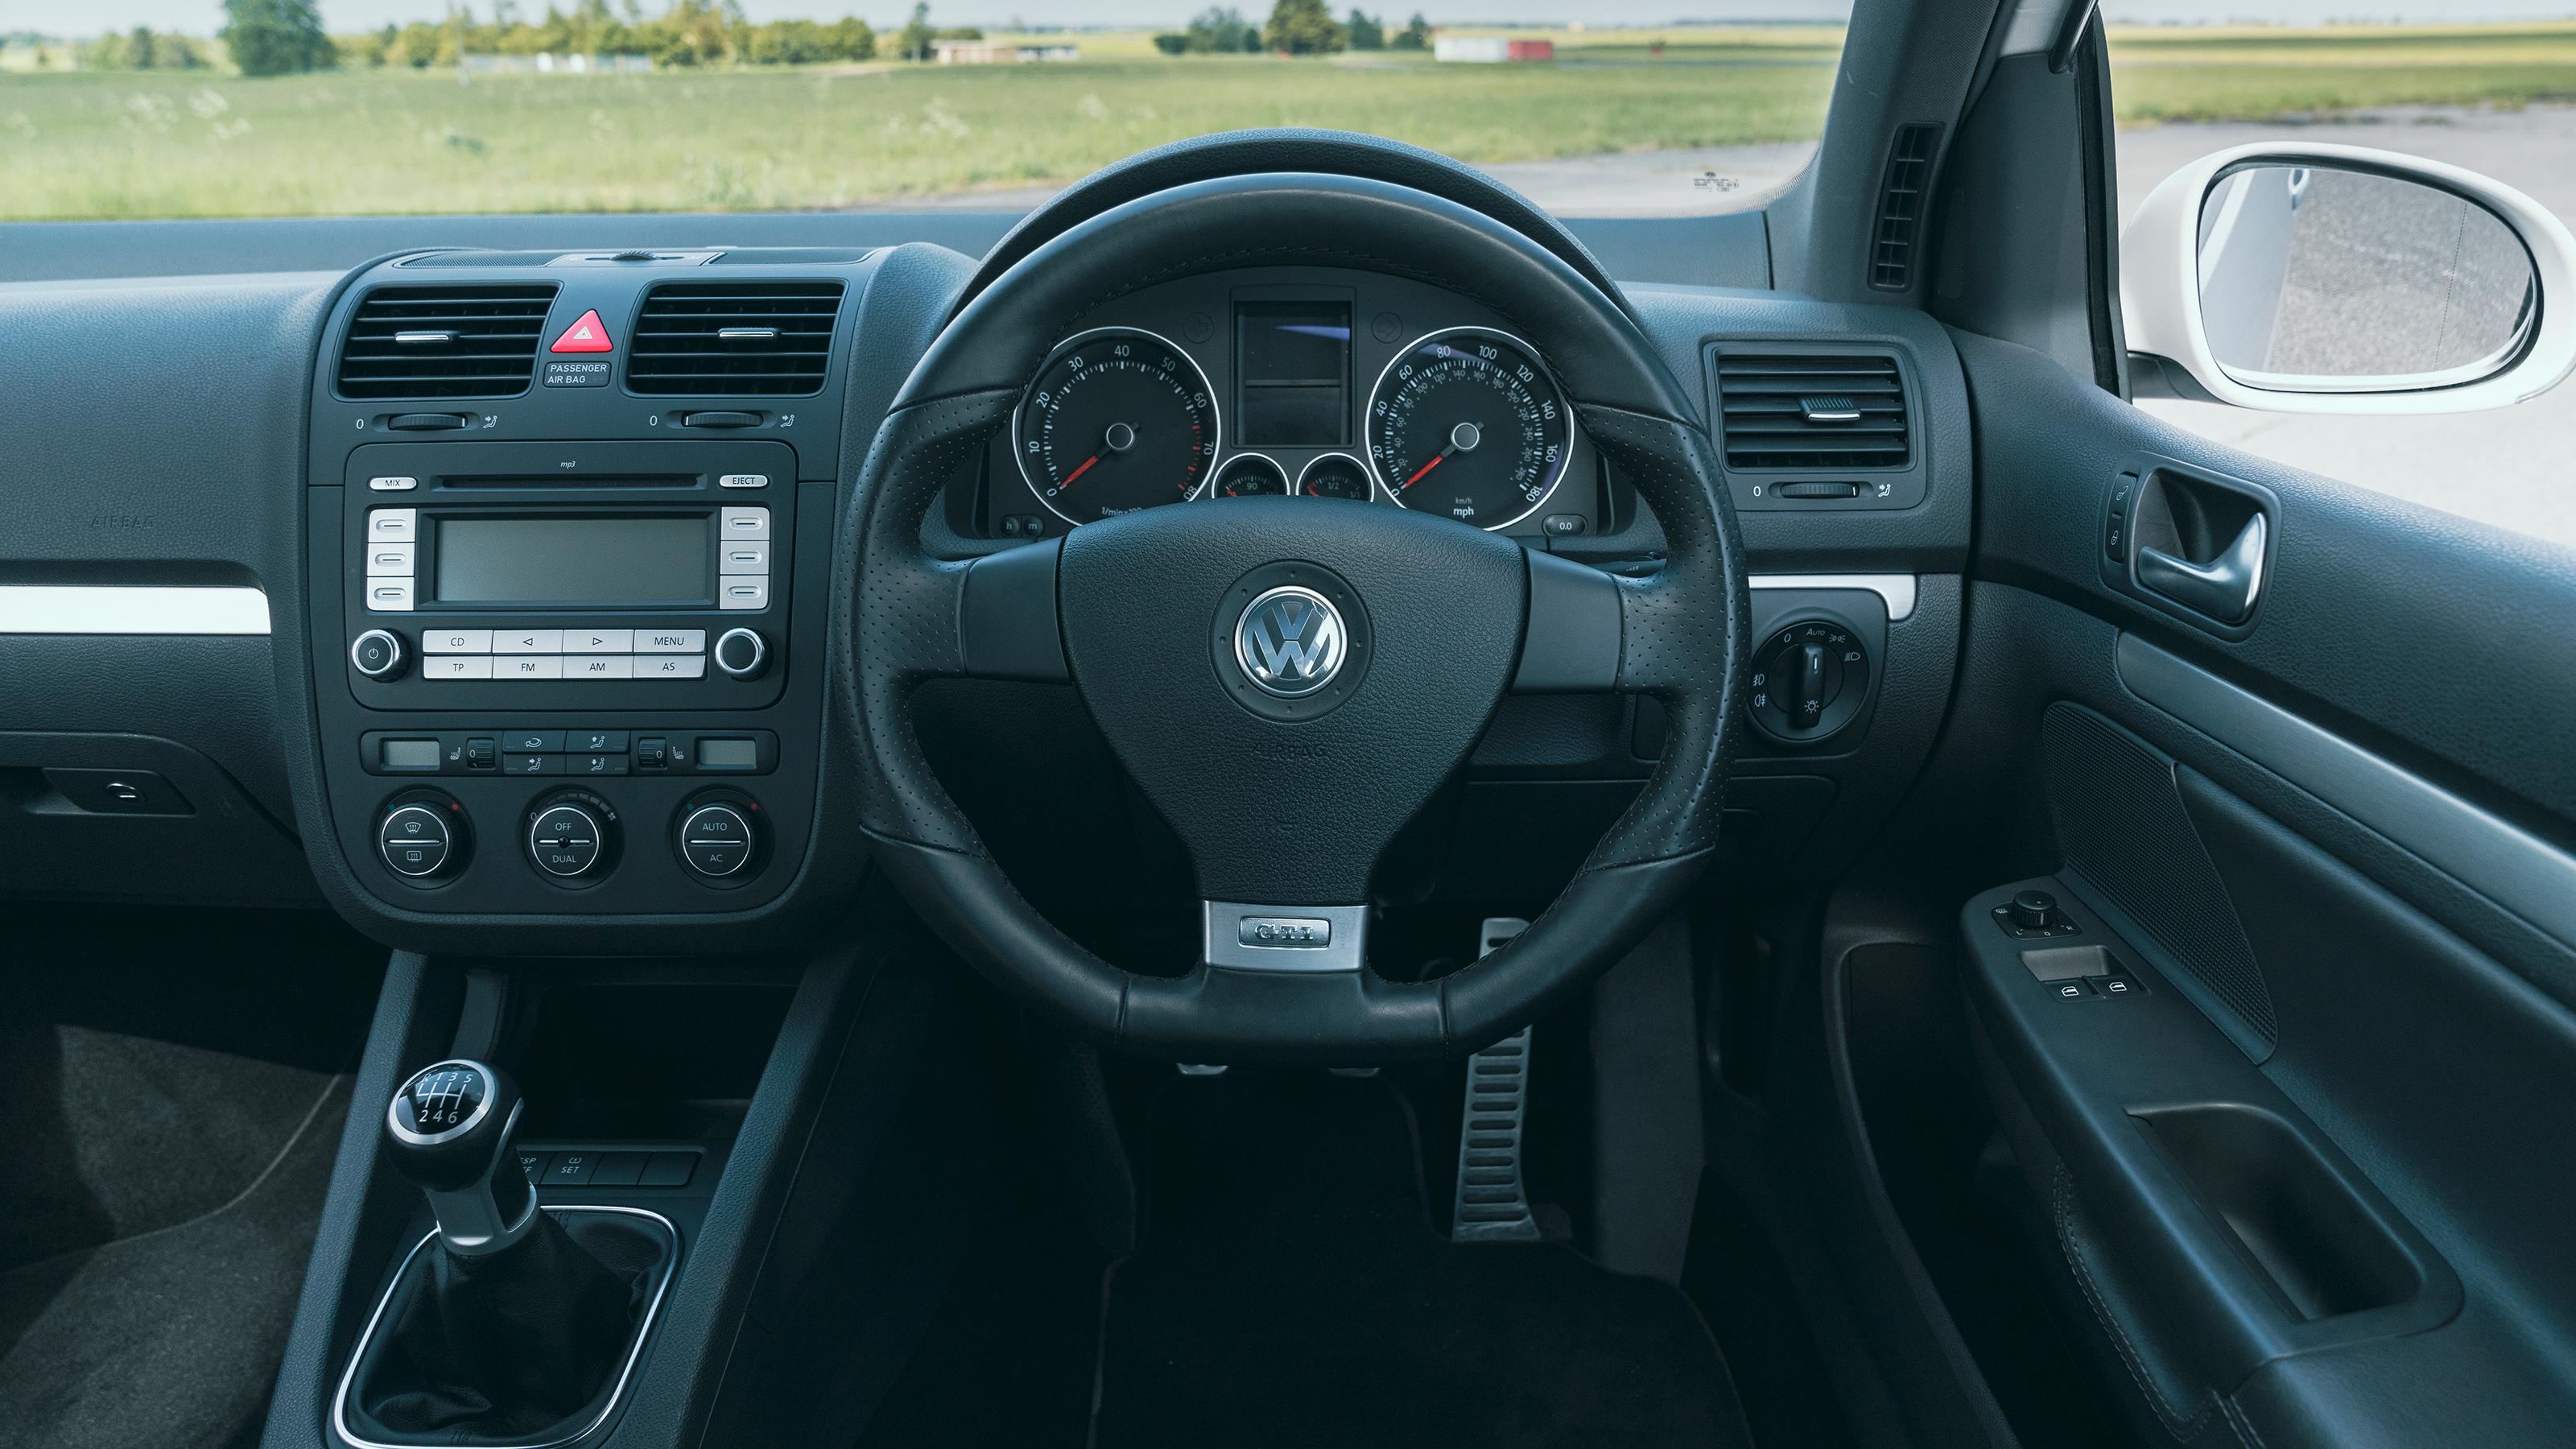 VW Golf GTI 5 